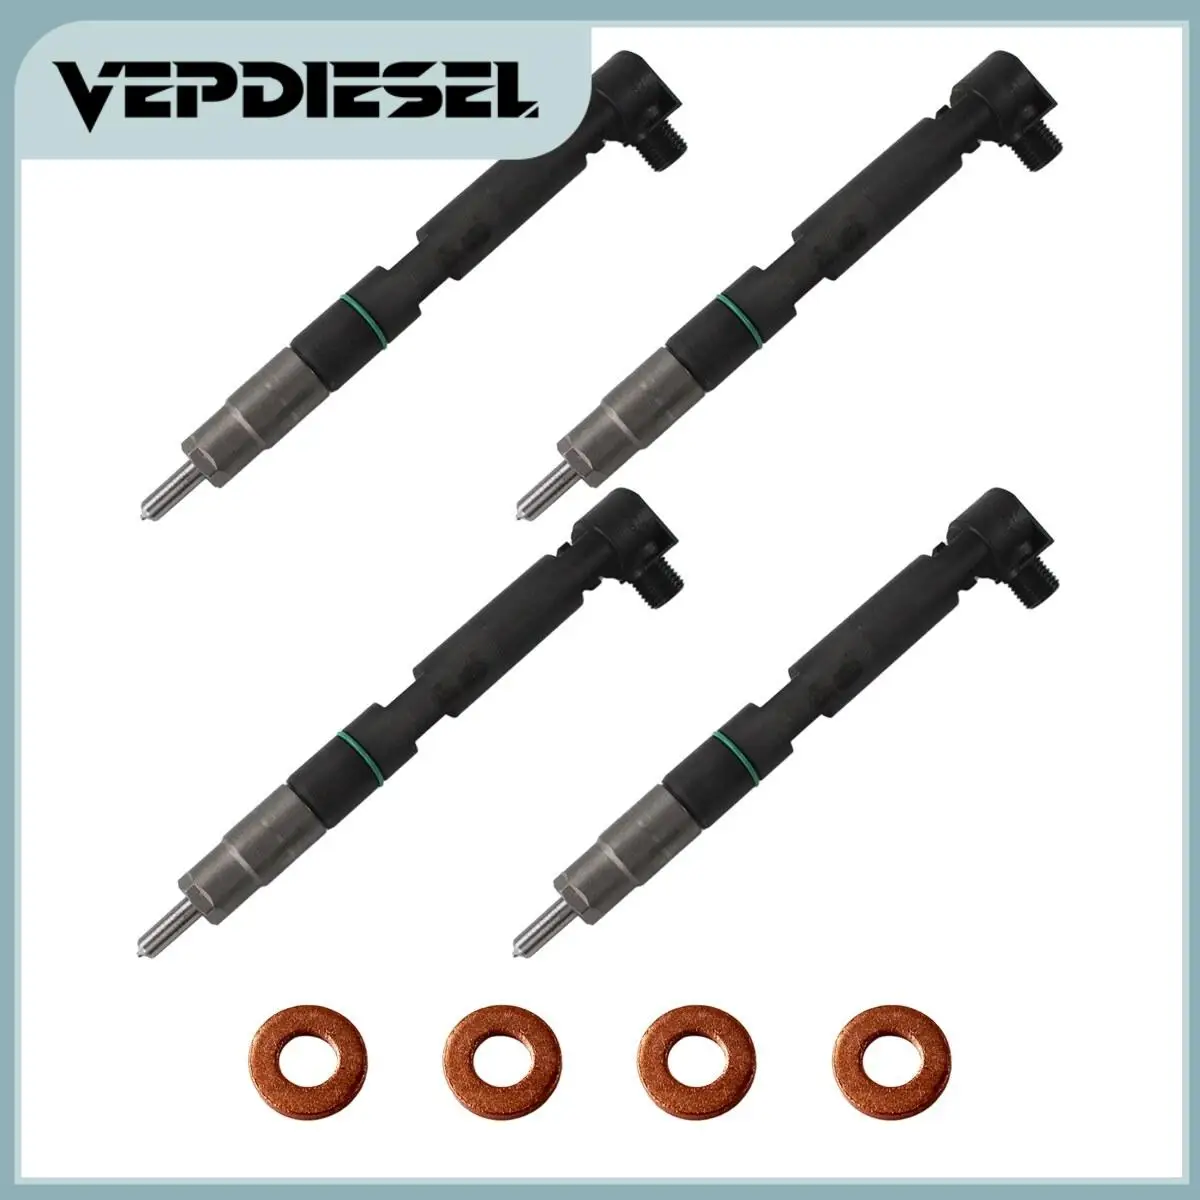 

4x New Fuel Injectors For Doosan D24 D18 Delphi Bobcat ToolCat Compact Track Loaders E32 E35 Excavator 28337917 400903-00074D